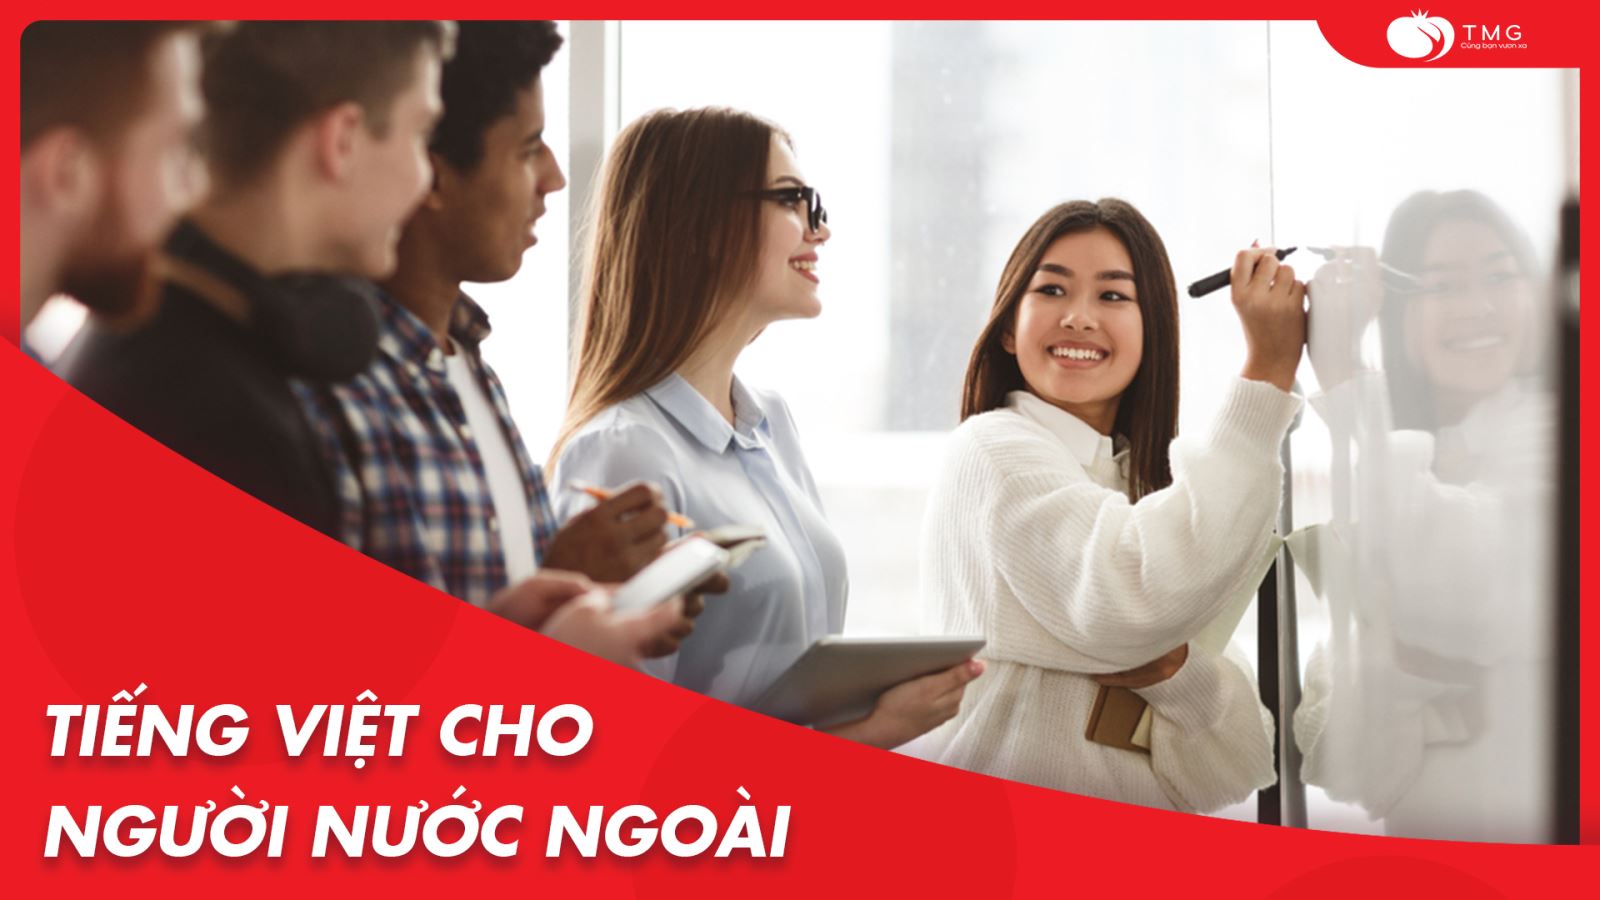 Khóa học tiếng Việt cho người nước ngoài